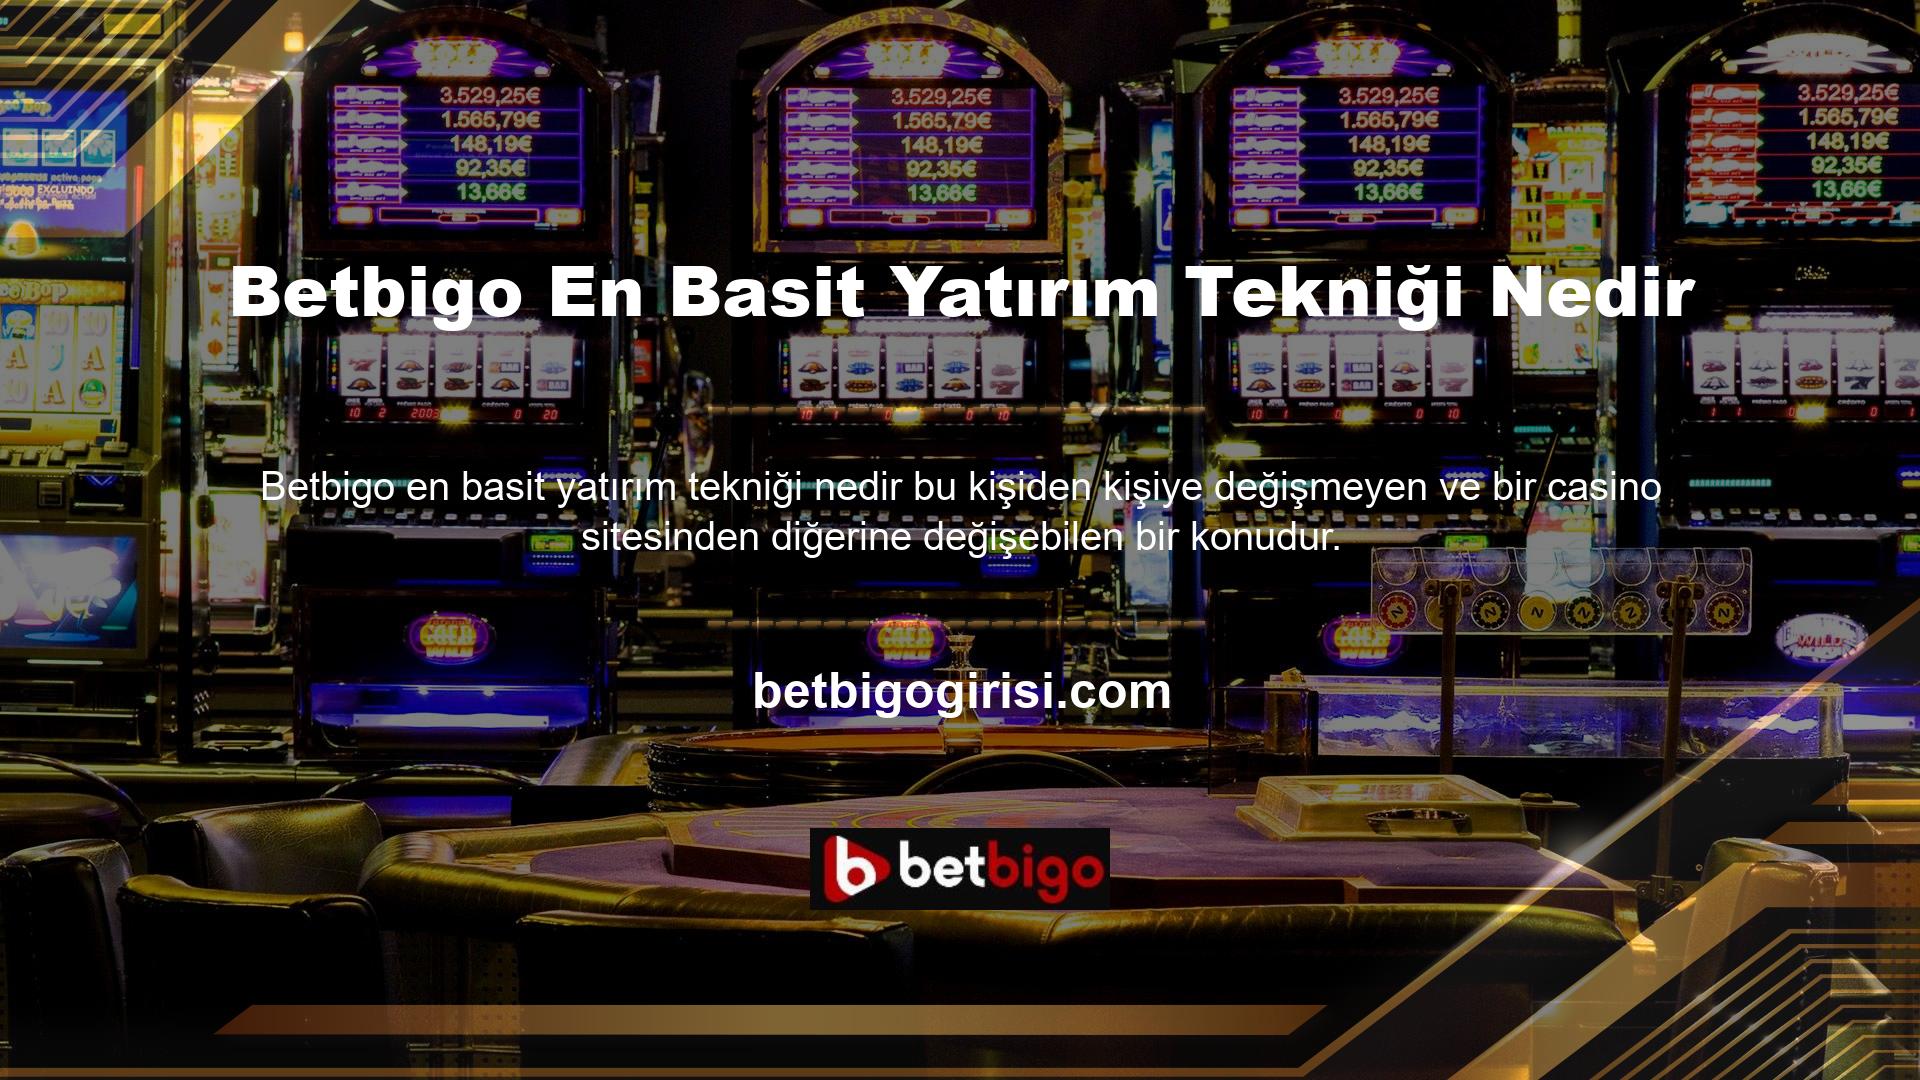 Ancak bugün Türk bahis şirketlerinin casino şirketlerinde bir takım yatırım fırsatlarını incelediğini görebiliriz